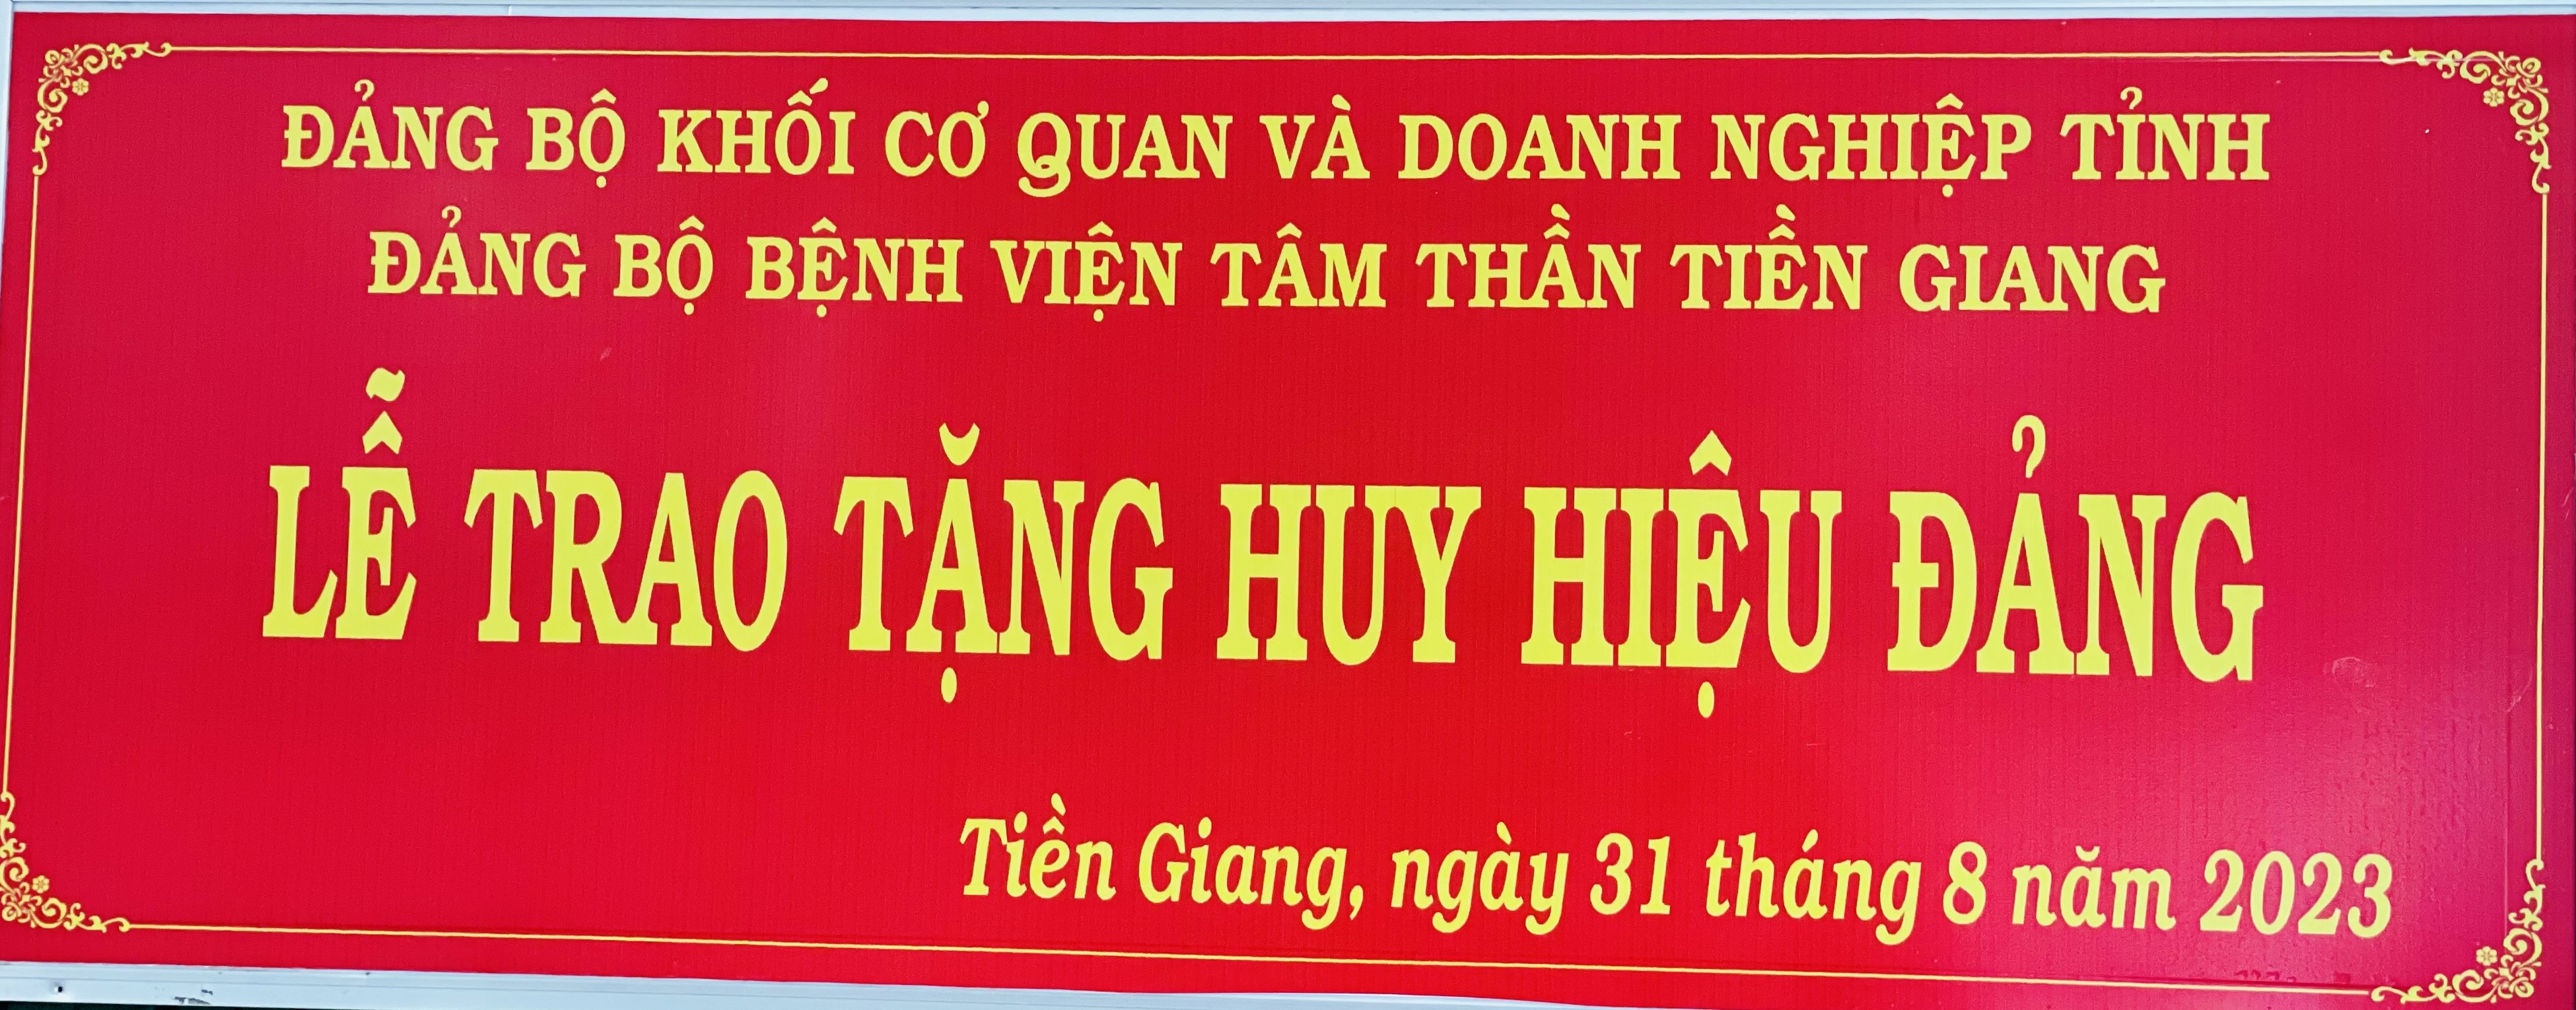 Đảng bộ Đánh giá nhà cái W88 chi tiết nhất 2023
 tổ chức lể trao huy hiệu 30 năm tuổi đảng cho đảng viên Nguyễn Văn Sơn đợt 2/9